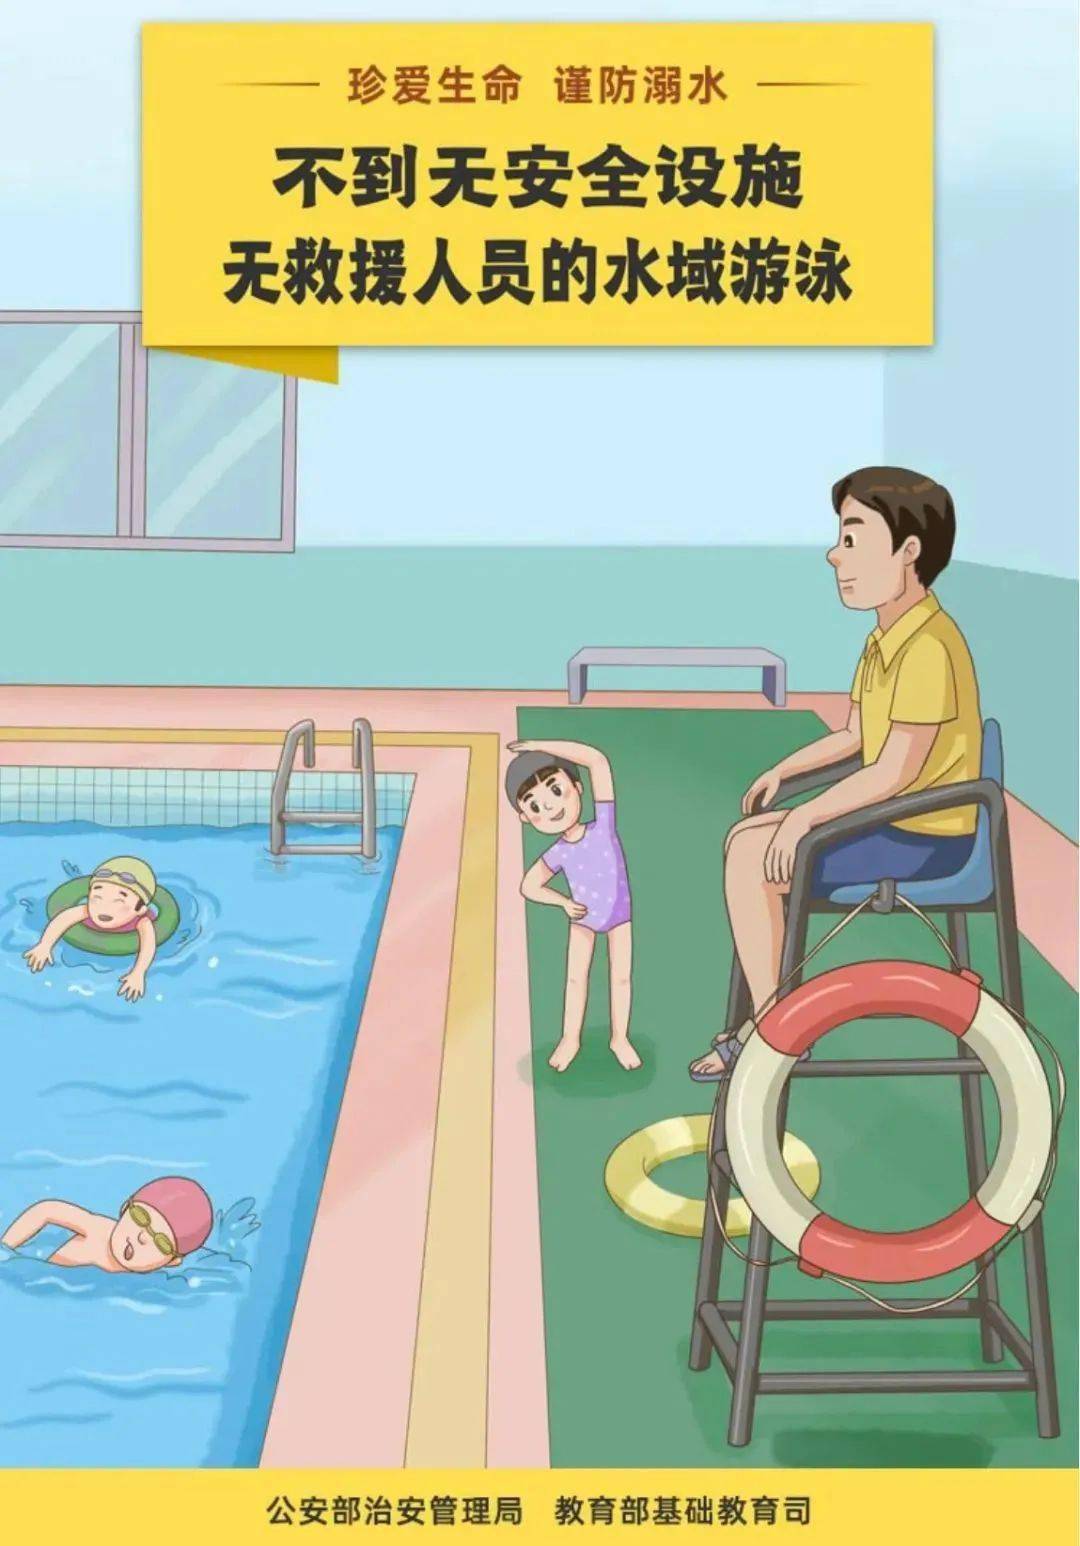 光谷家长,夏天来了,千万不要让孩子私自下水游泳!